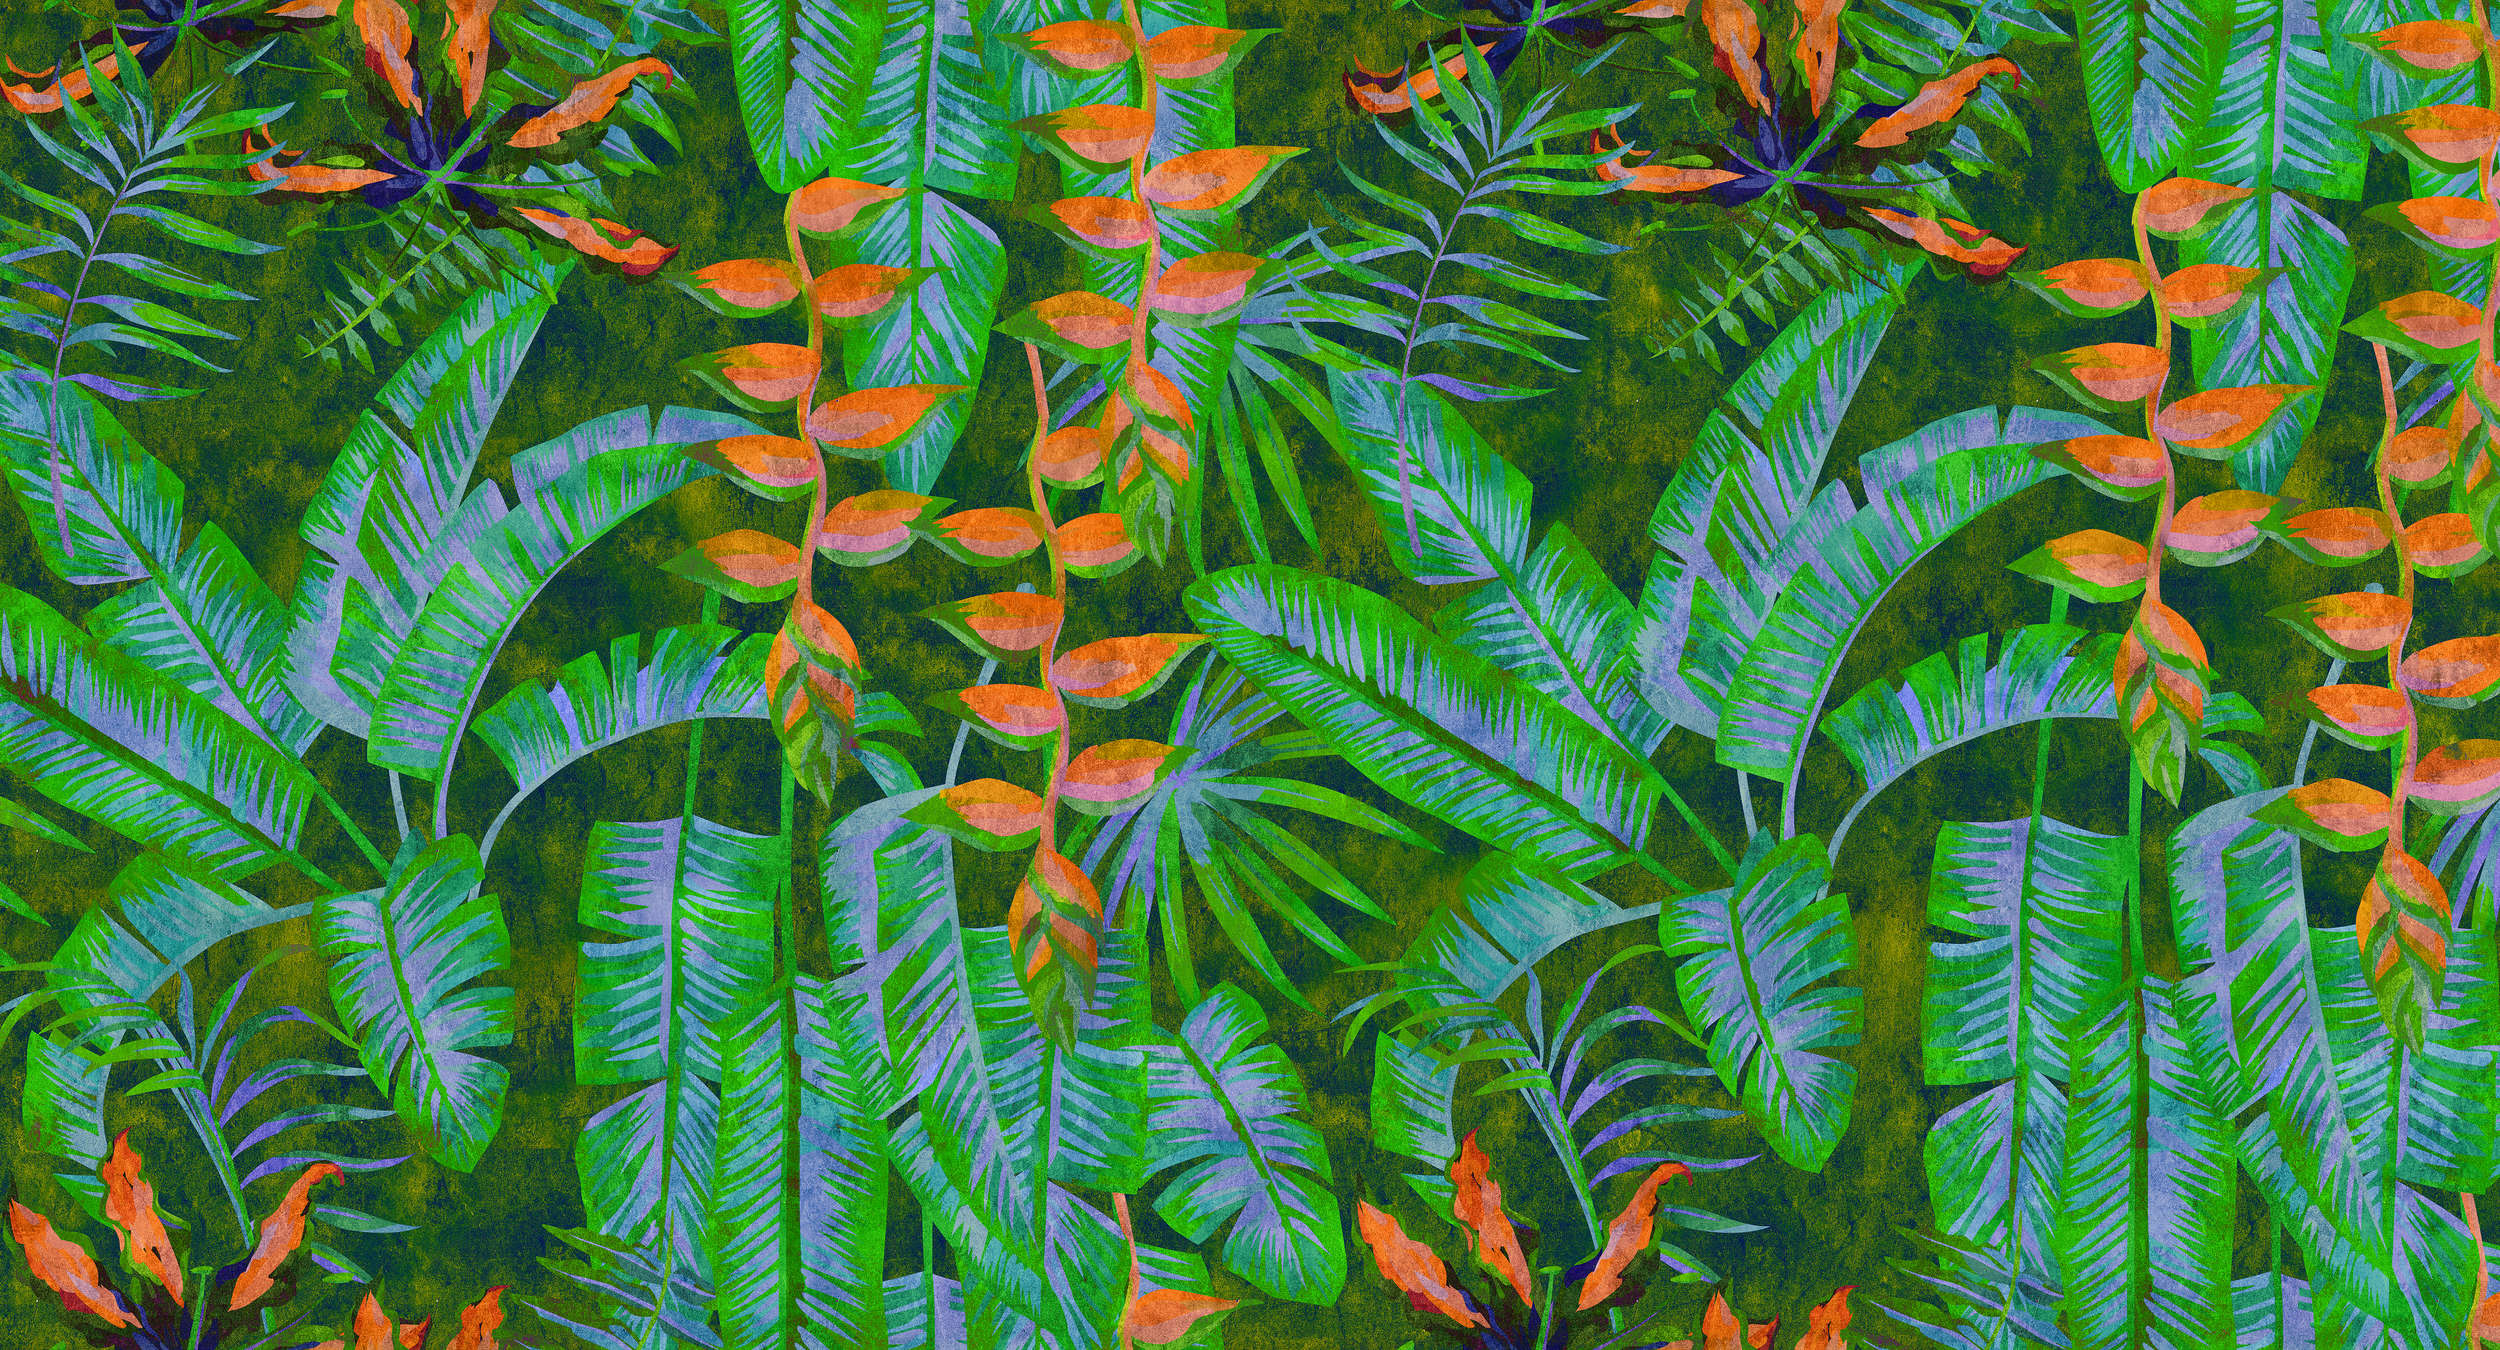             Tropicana 4 - Carta da parati Jungle con colori vivaci - Natura qualita consistenza in carta assorbente - Verde, arancione | Vello liscio opaco
        